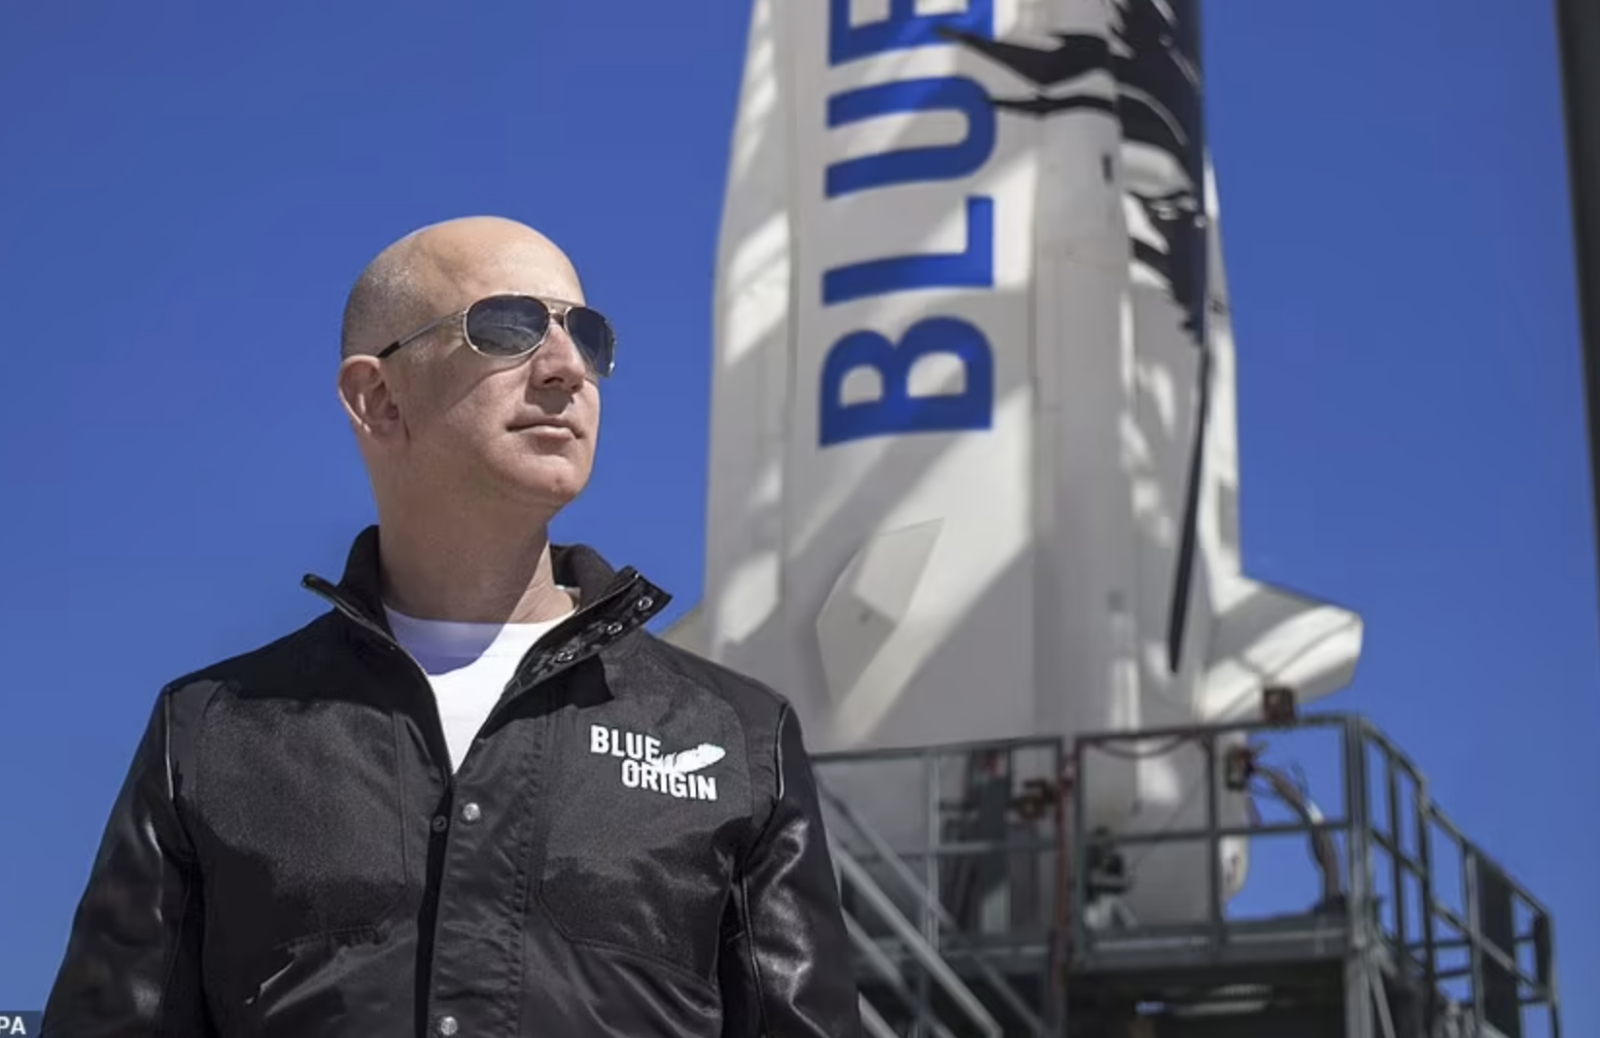 Những nguy hiểm tiềm tàng trong chuyến du hành vũ trụ của tỷ phú Jeff Bezos - 2